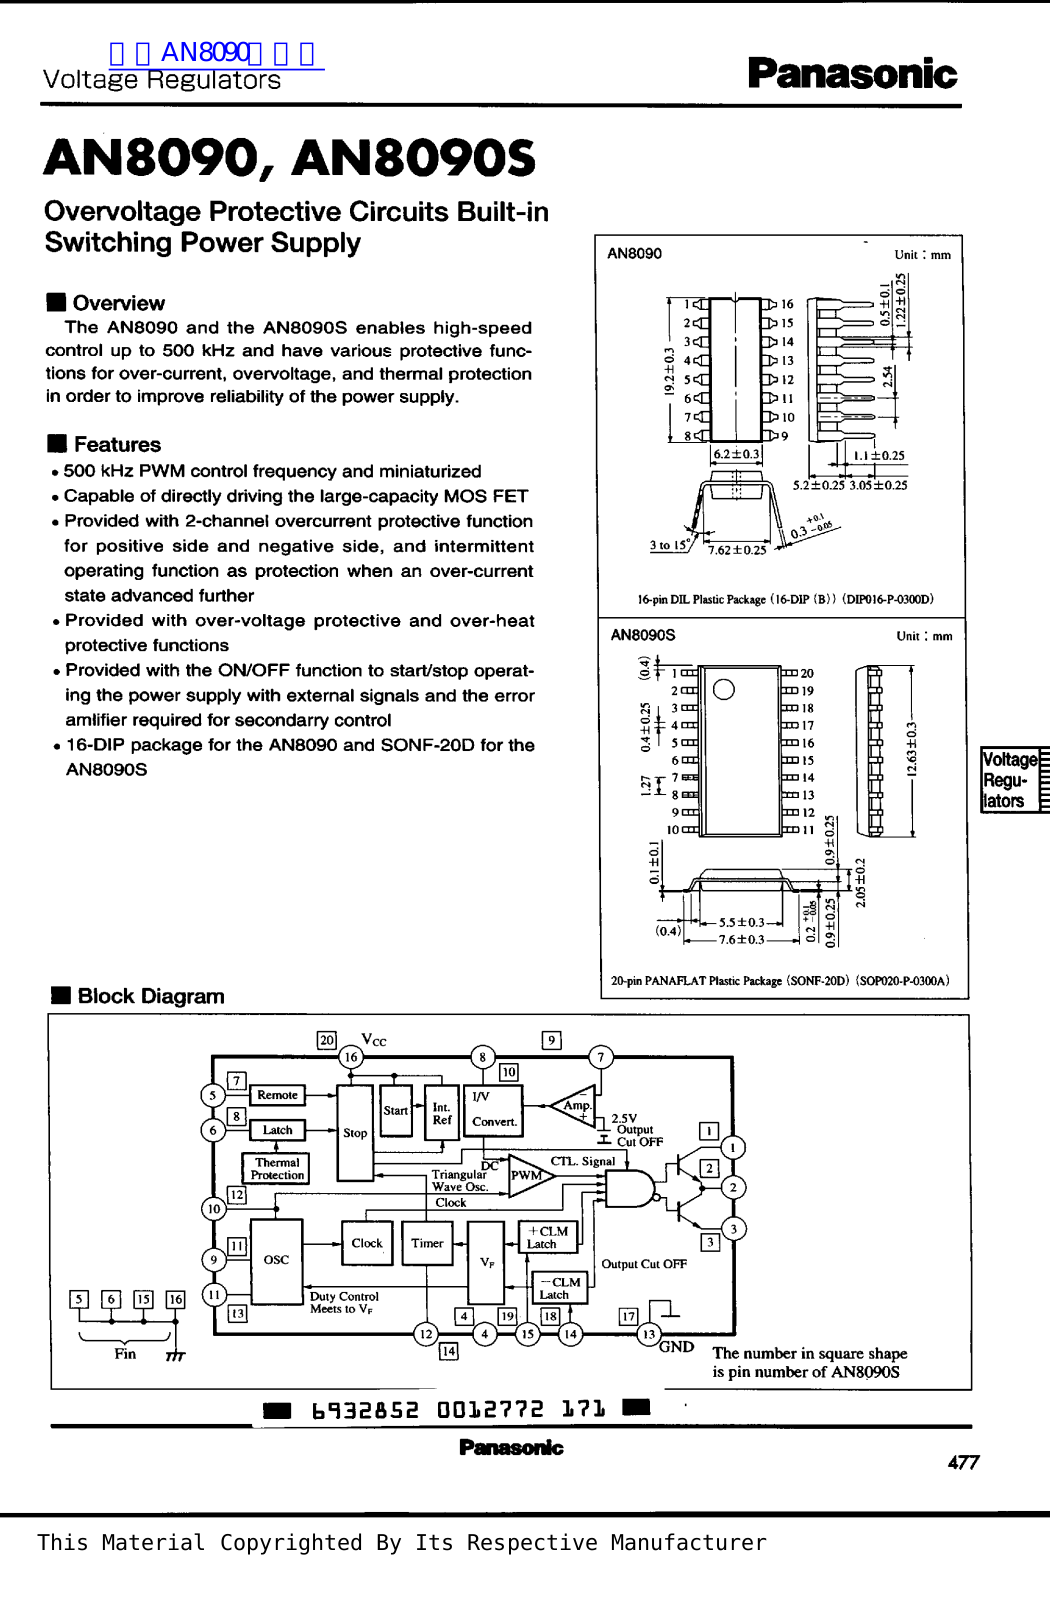 Panasonic AN8090, AN8090S Technical data